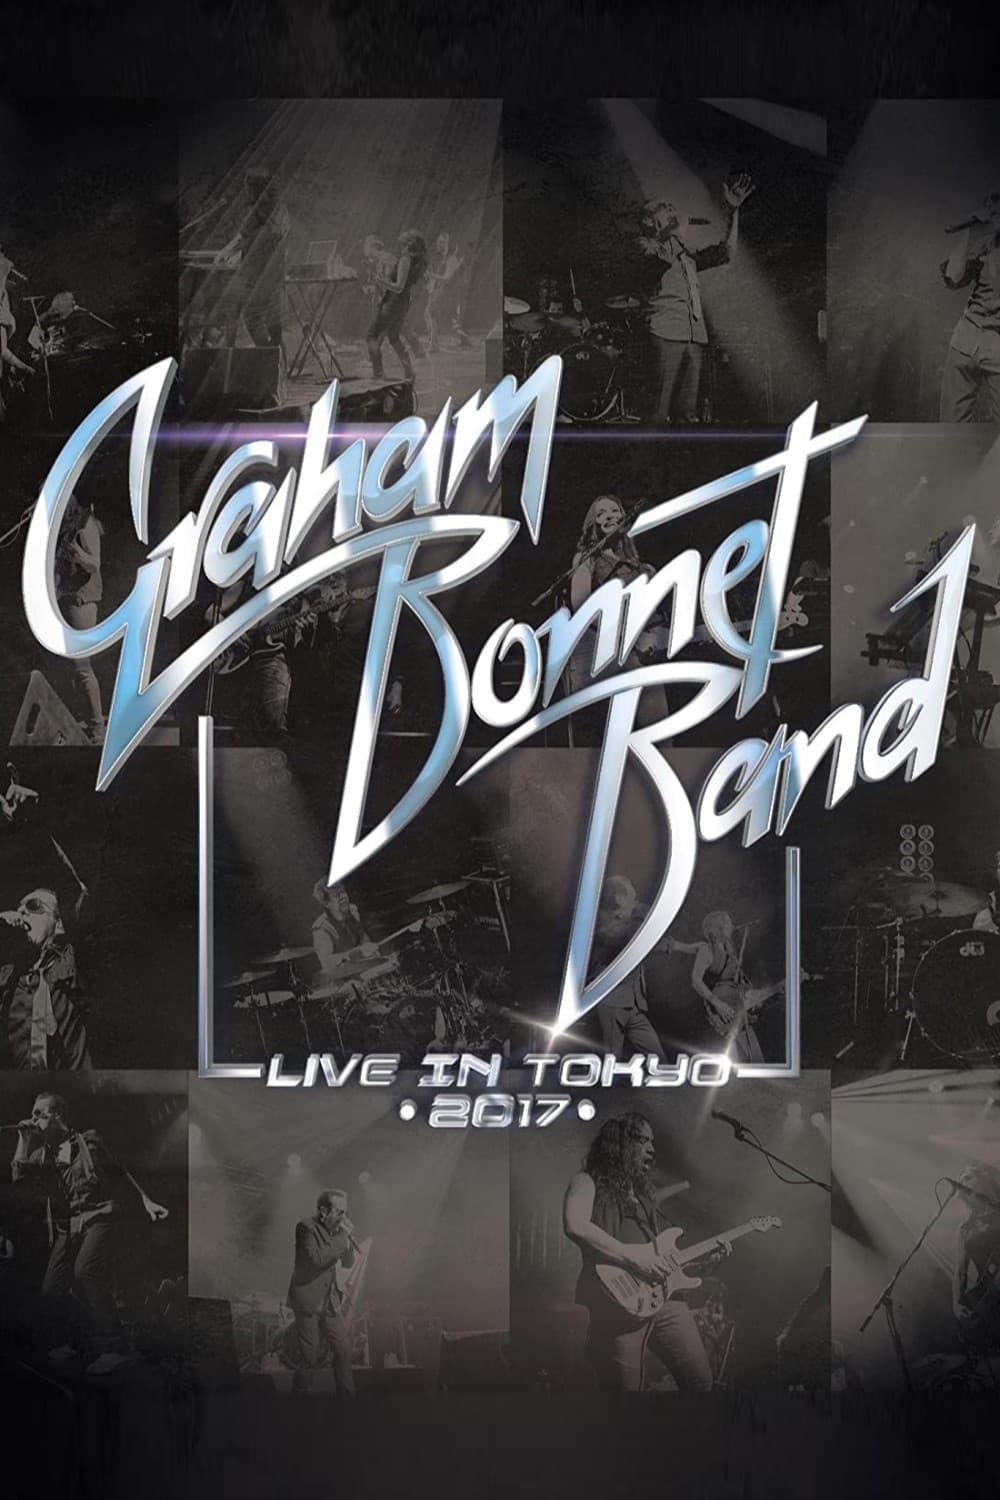 Graham Bonnet Band - Live In Tokyo 2017 poster